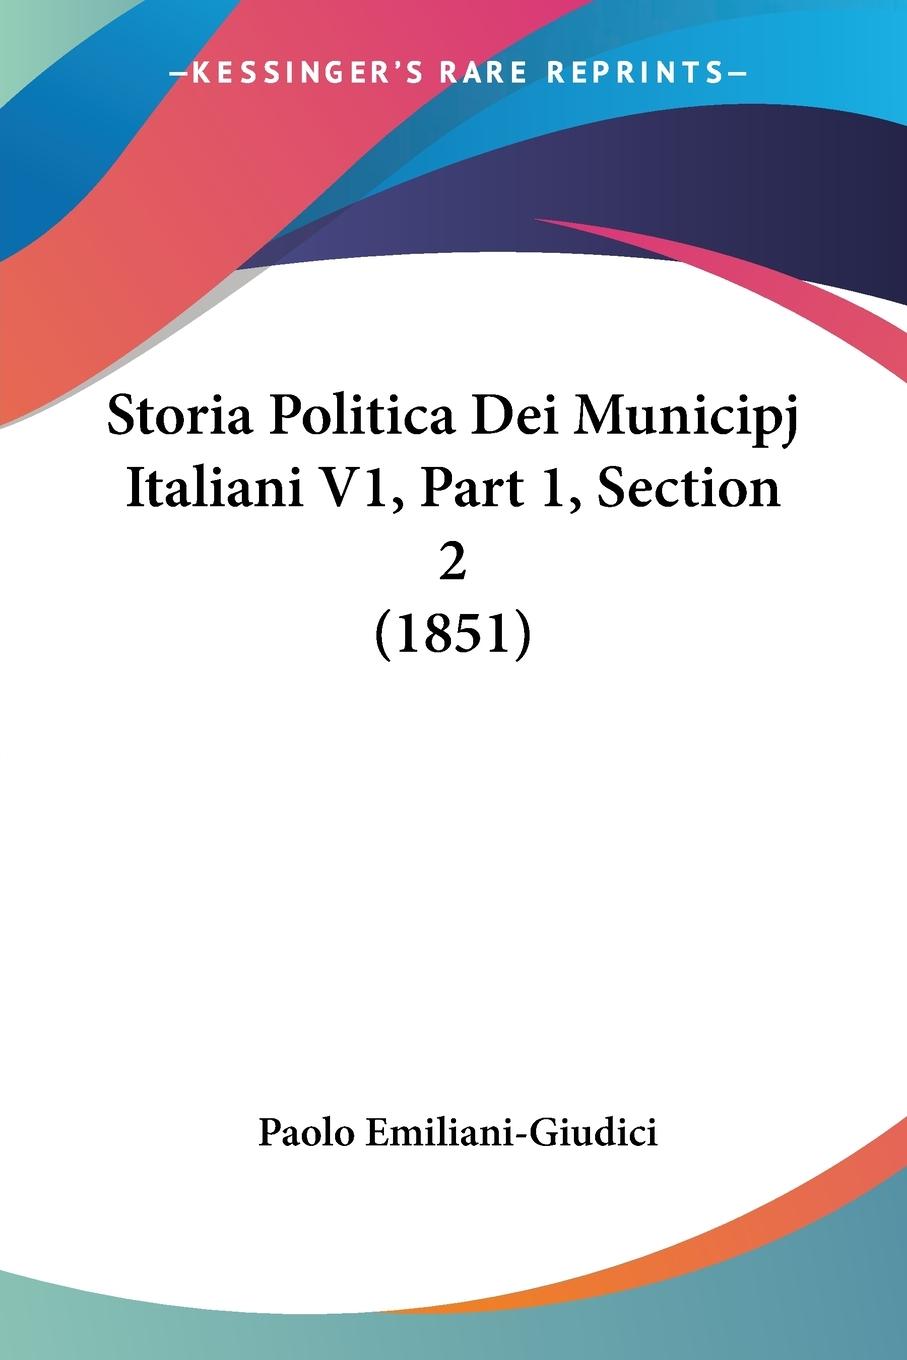 Storia Politica Dei Municipj Italiani V1, Part 1, Section 2 (1851) - Emiliani-Giudici, Paolo